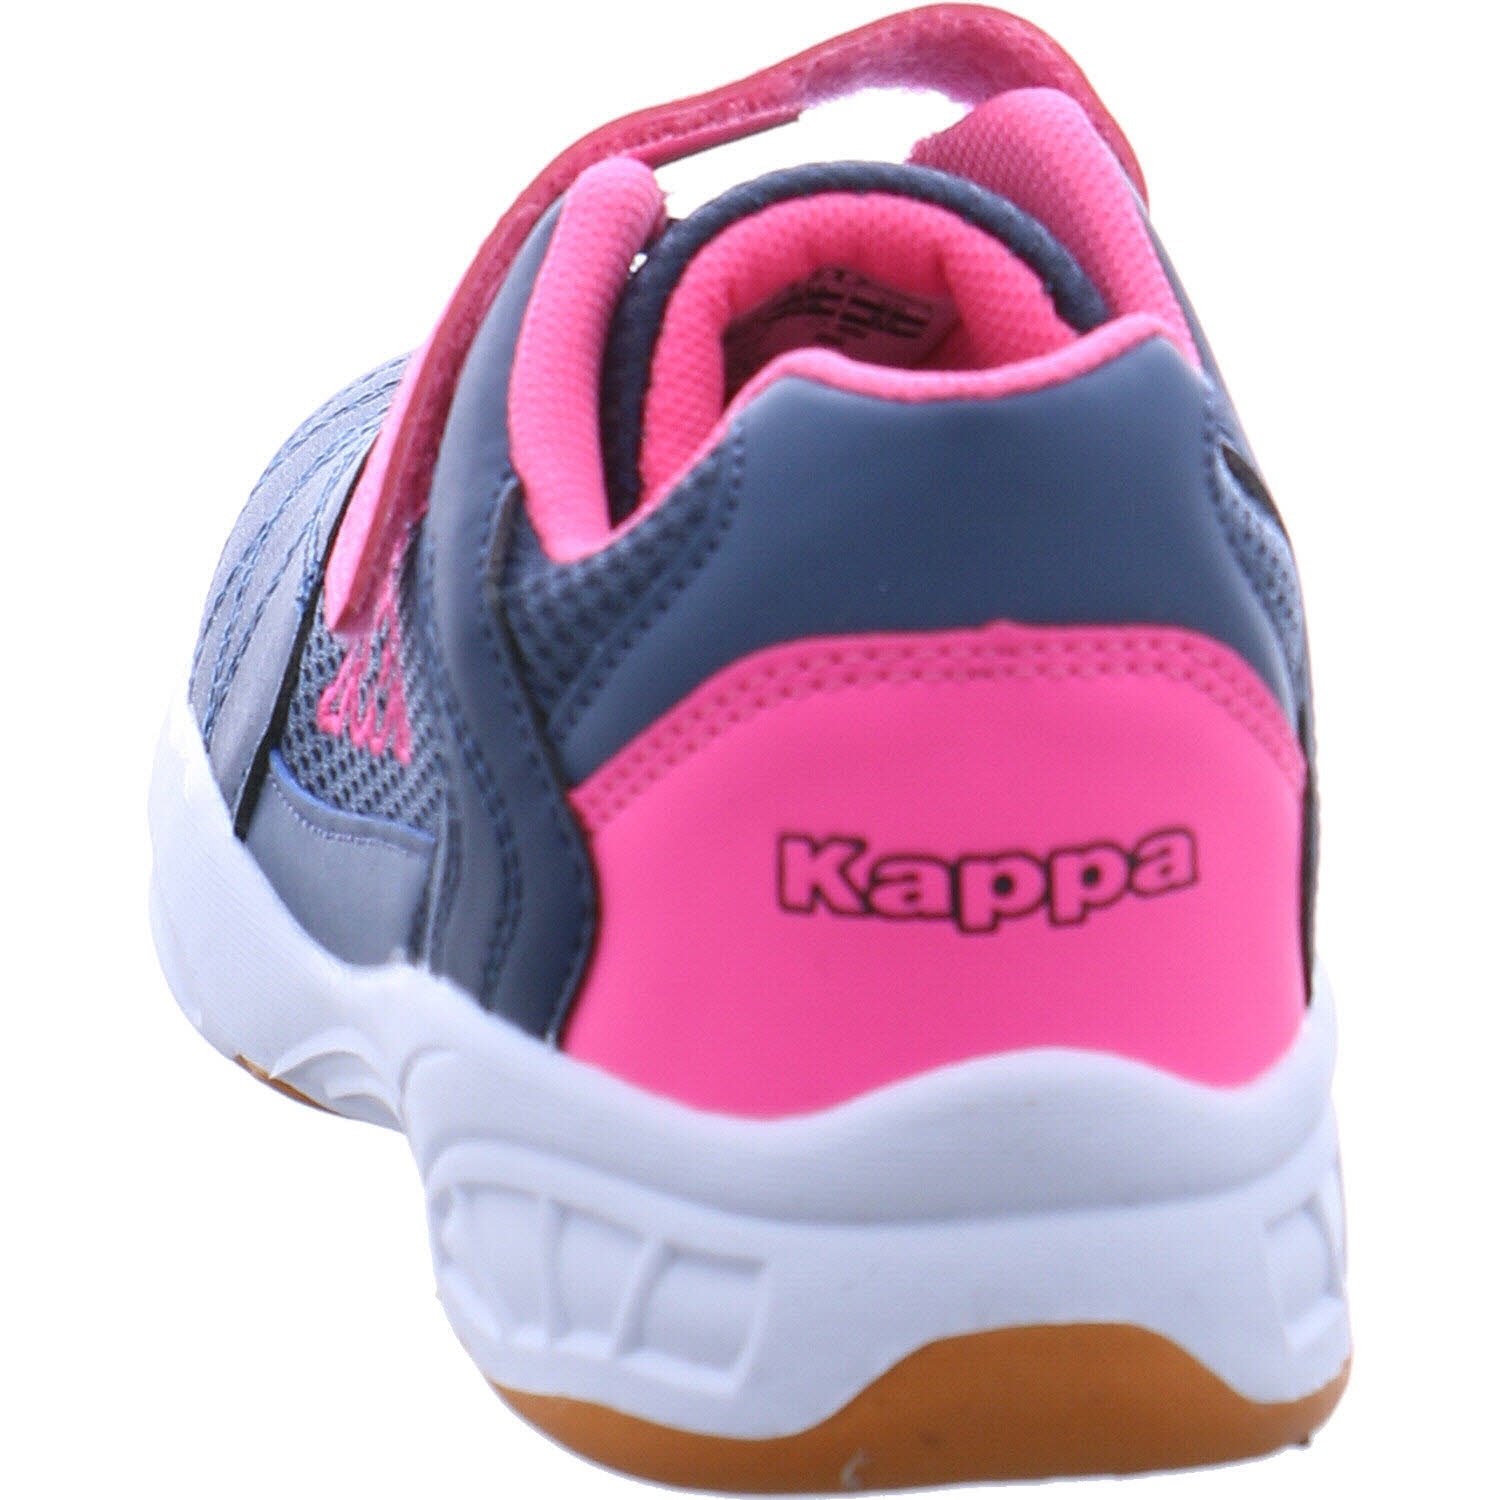 Kappa Hallenschuh Stylecode: 260819 MFK Droum II MF K für Mädchen in blau/ pink | P&P Shoes